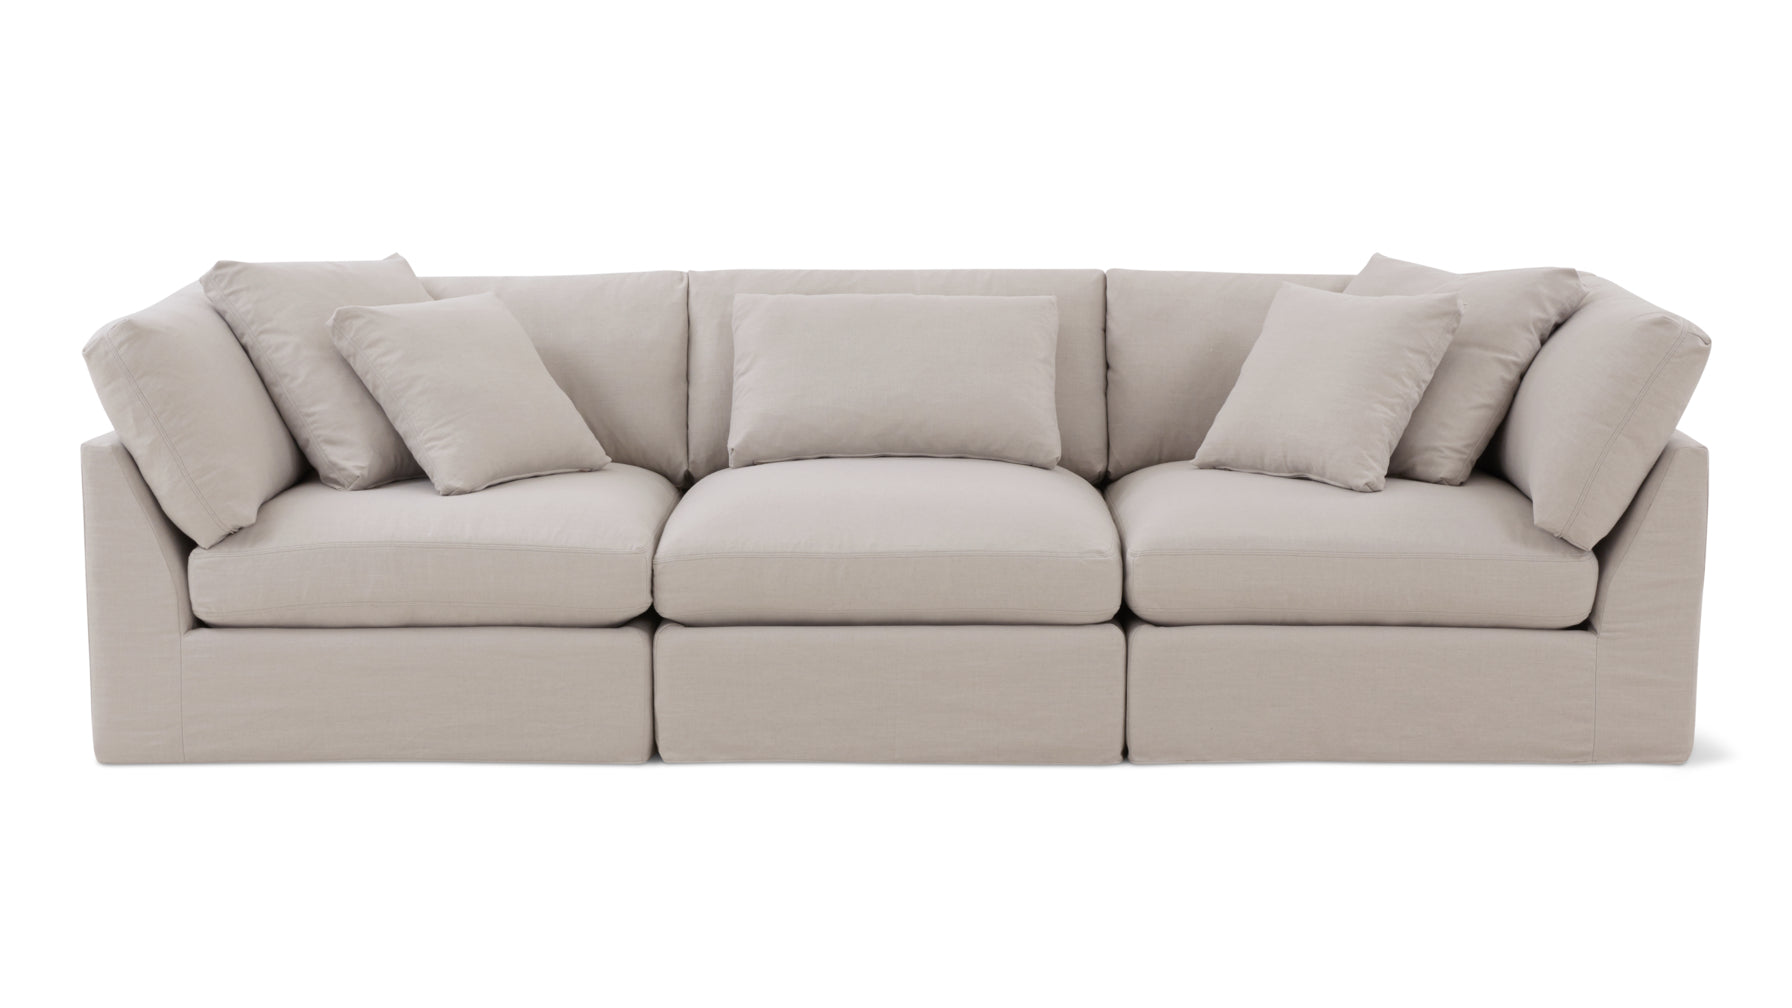 Get Together™ 3-Piece Modular Sofa, Large, Clay - Image 1